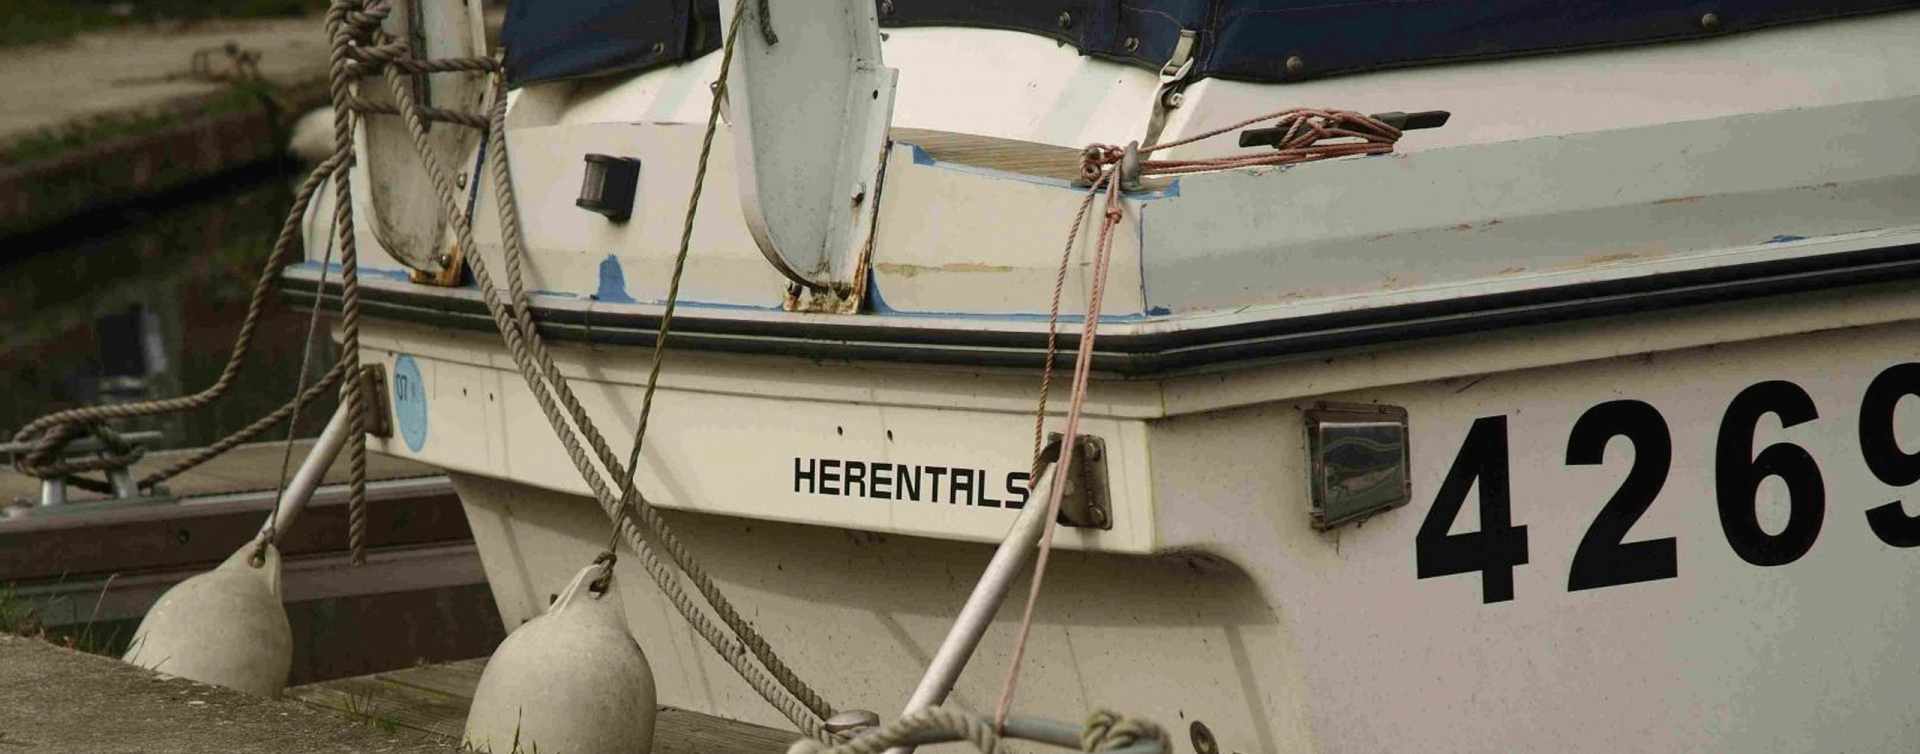 Jachthaven Herentals